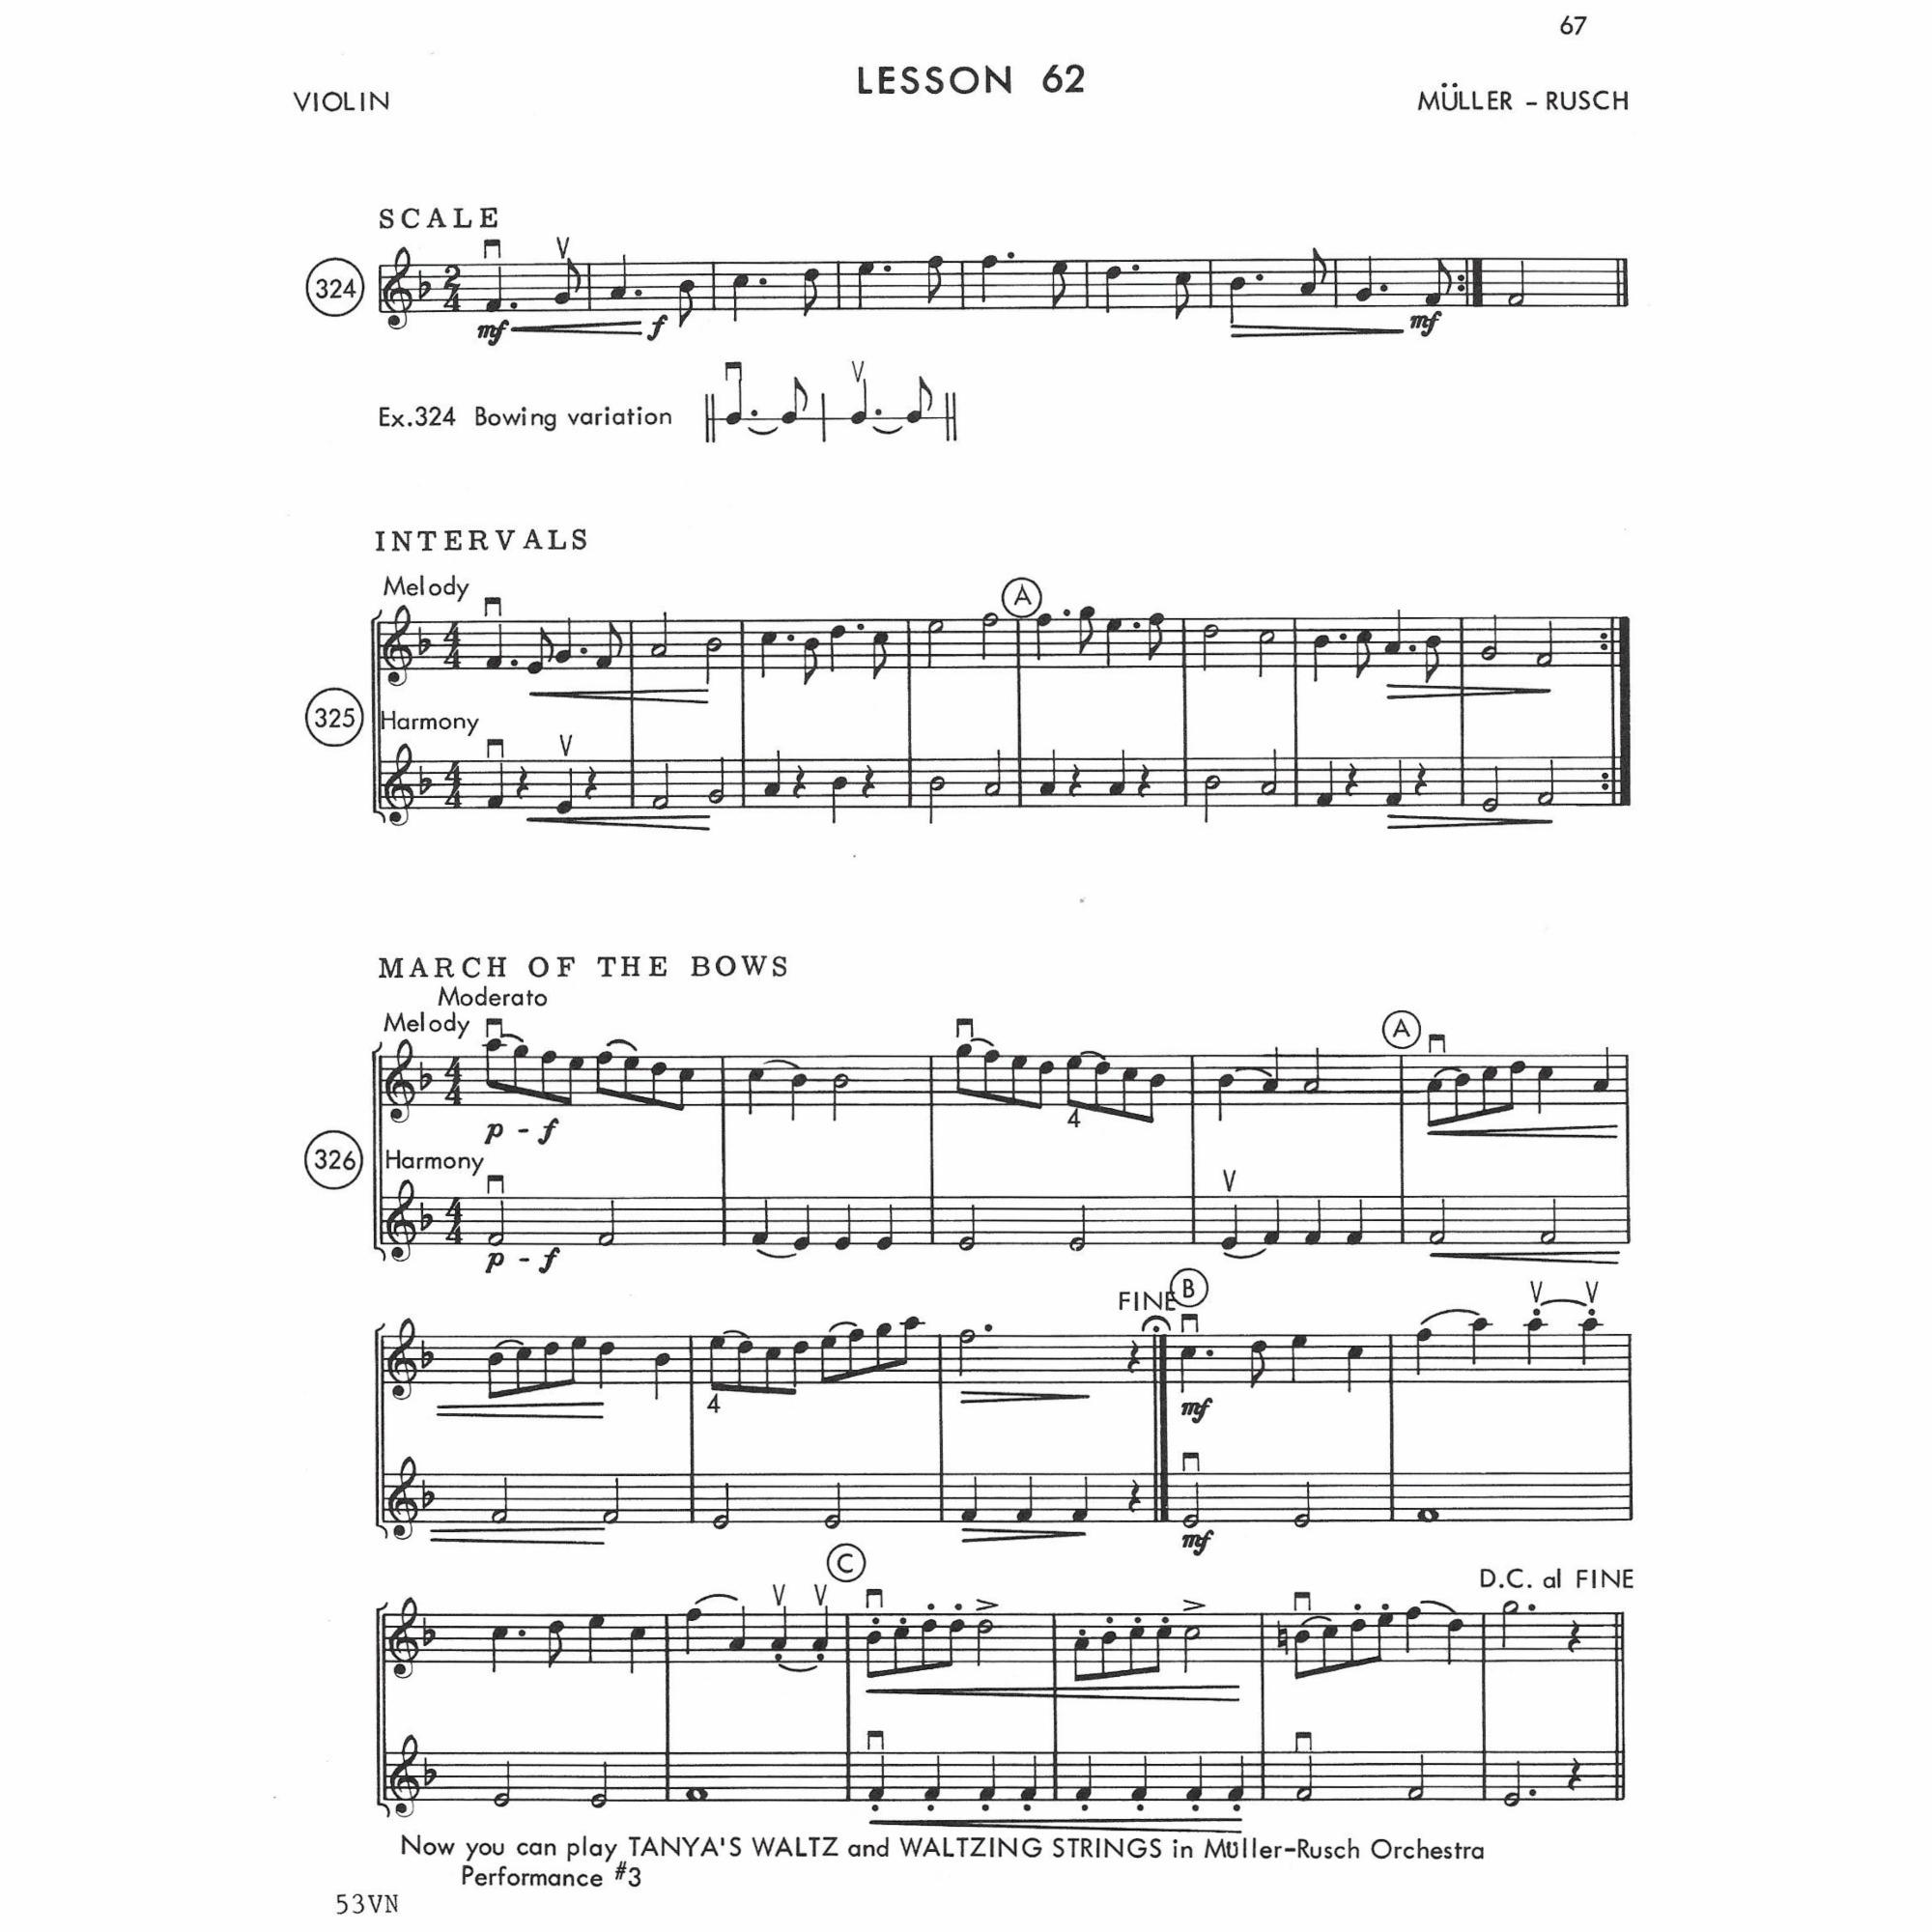 Sample: Violin (Pg. 3/67)